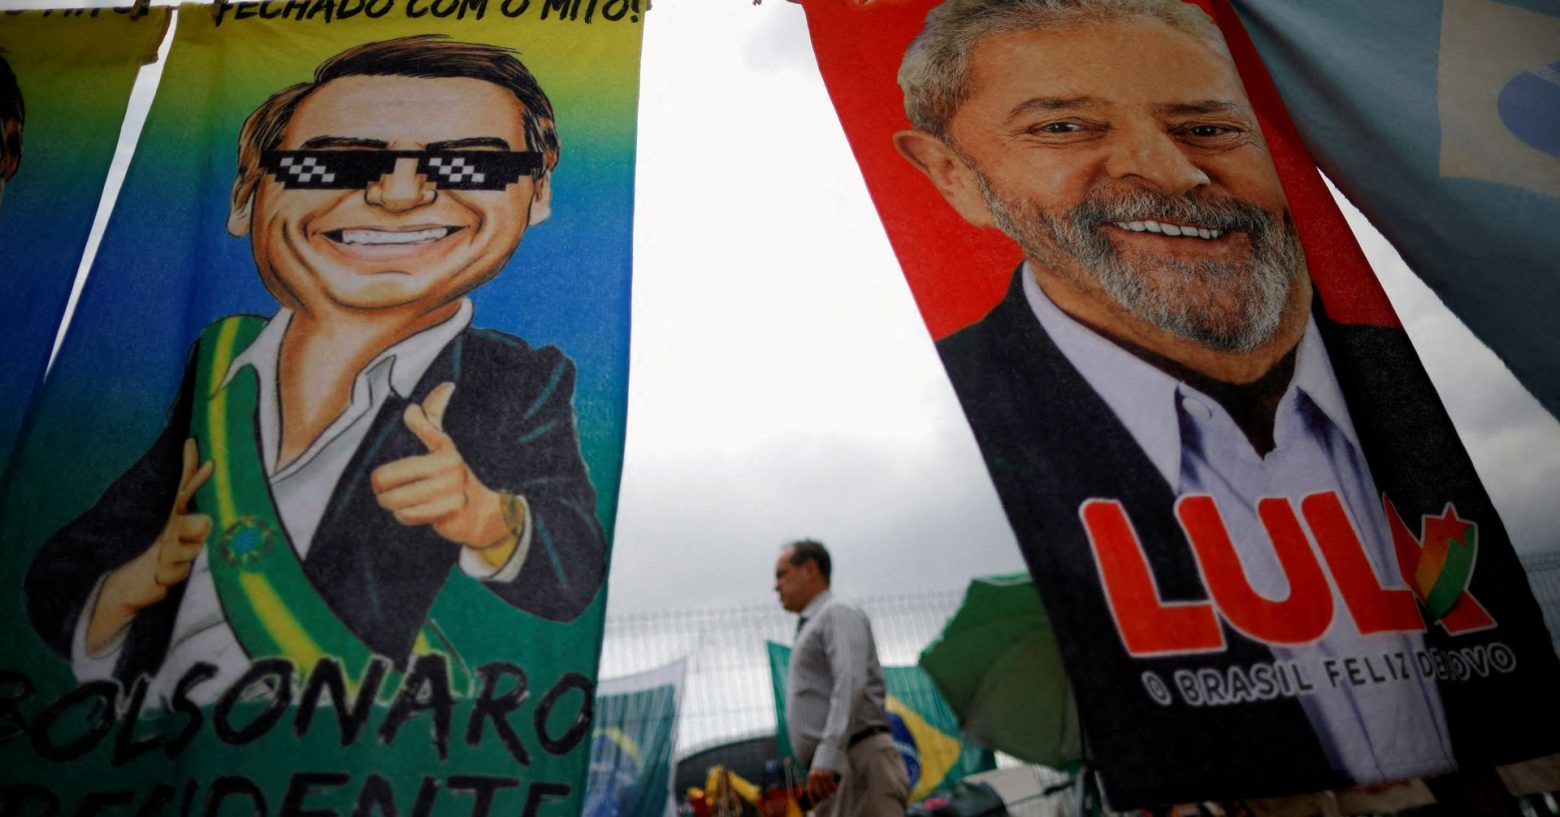 Βραζιλία: Ο Μπολσονάρο χάνει ξανά έδαφος έναντι του Λούλα δύο μέρες πριν την αναμέτρηση